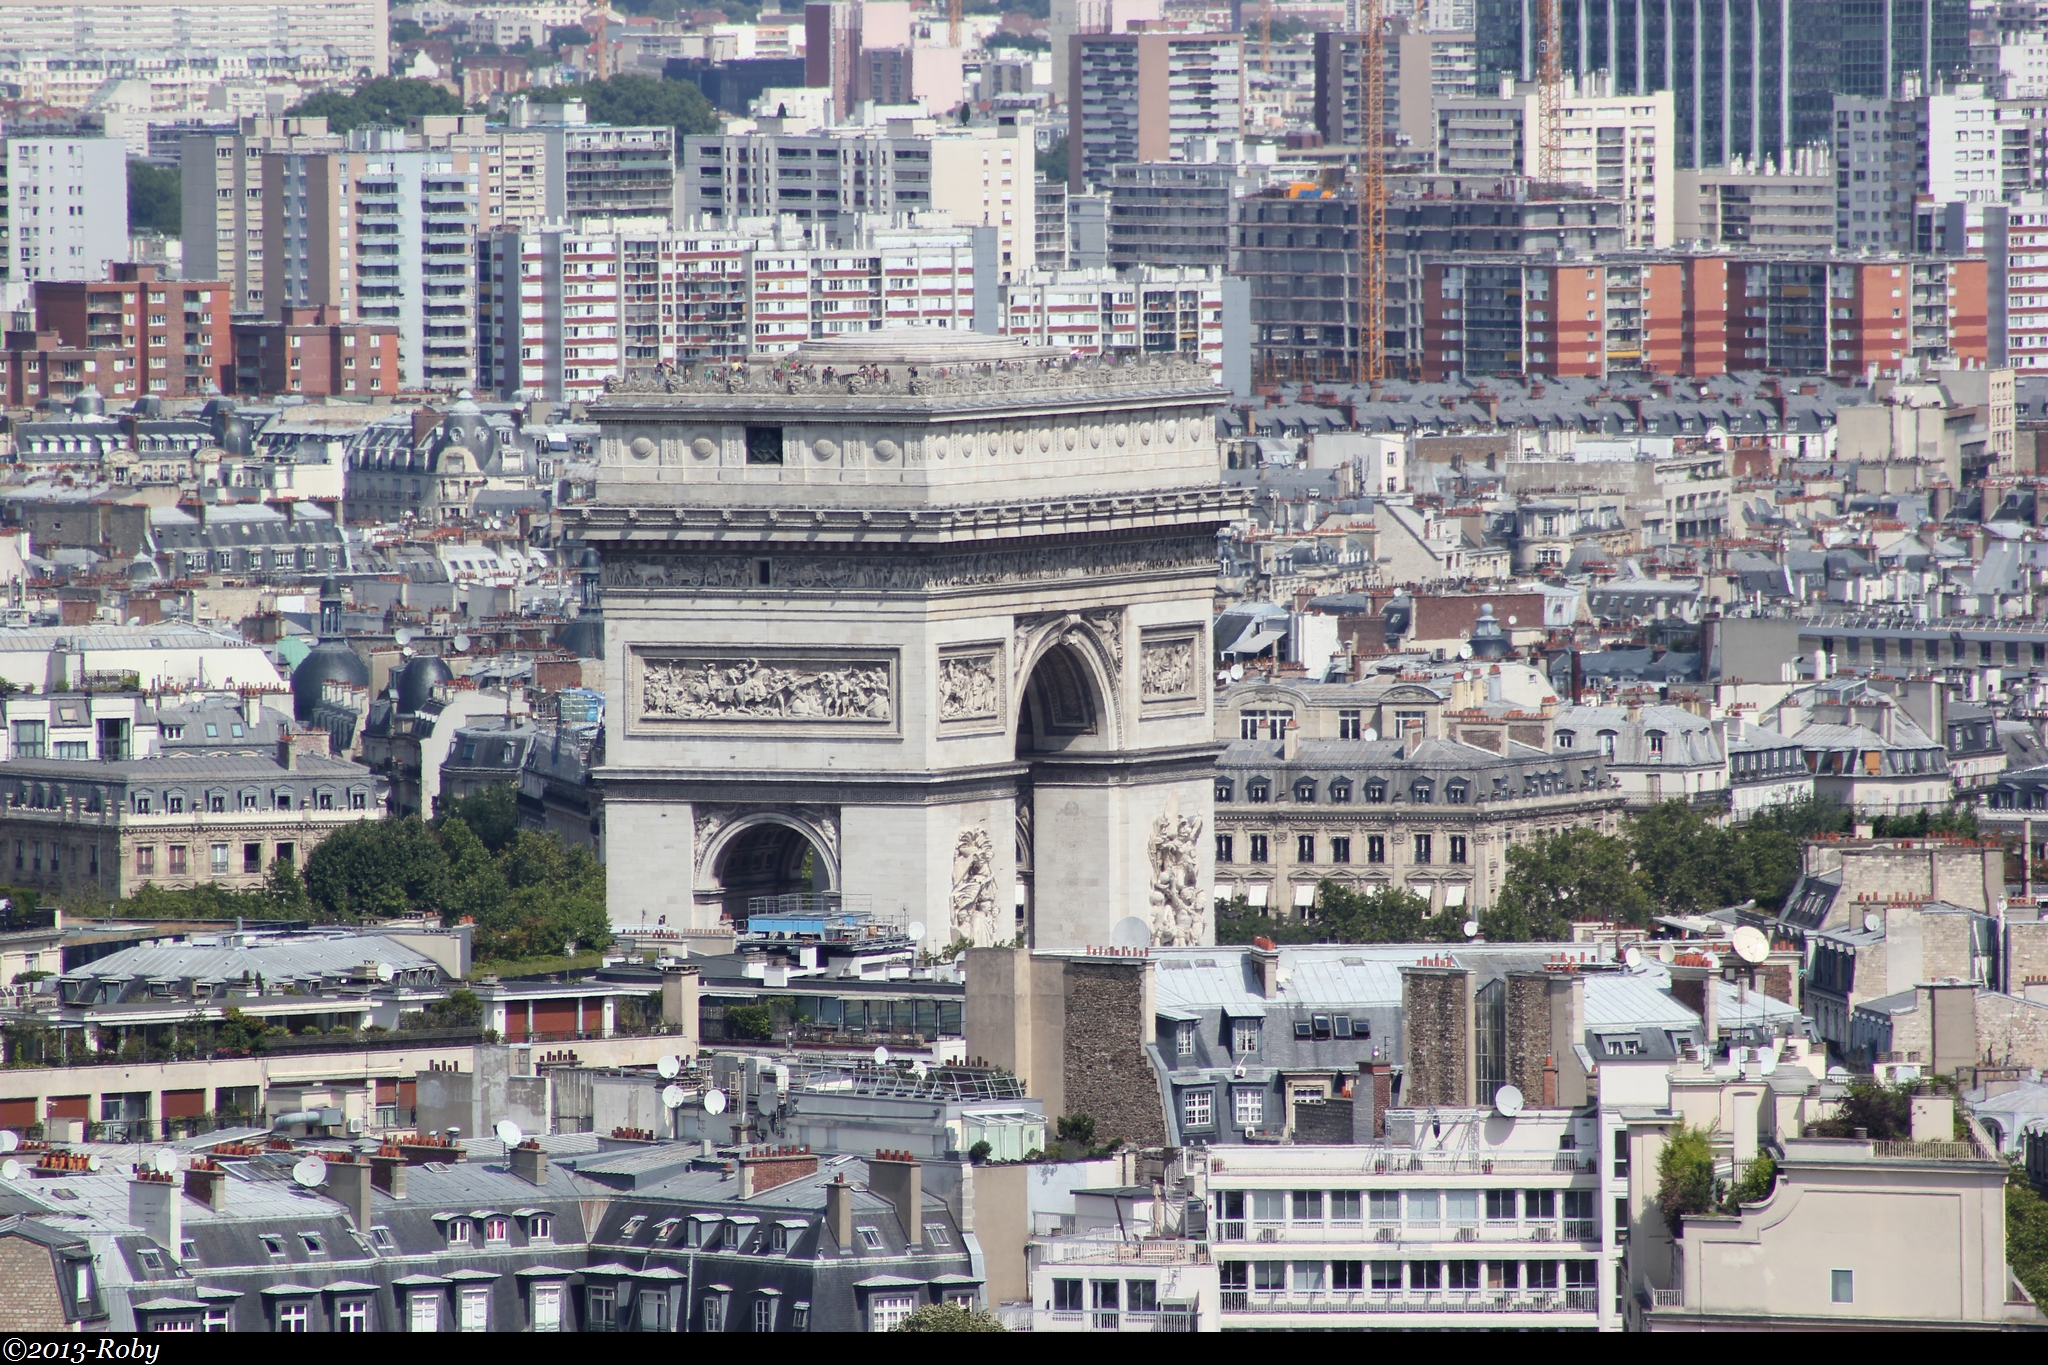 Paris vu de la Tour Eiffel-2013-Roby (10)